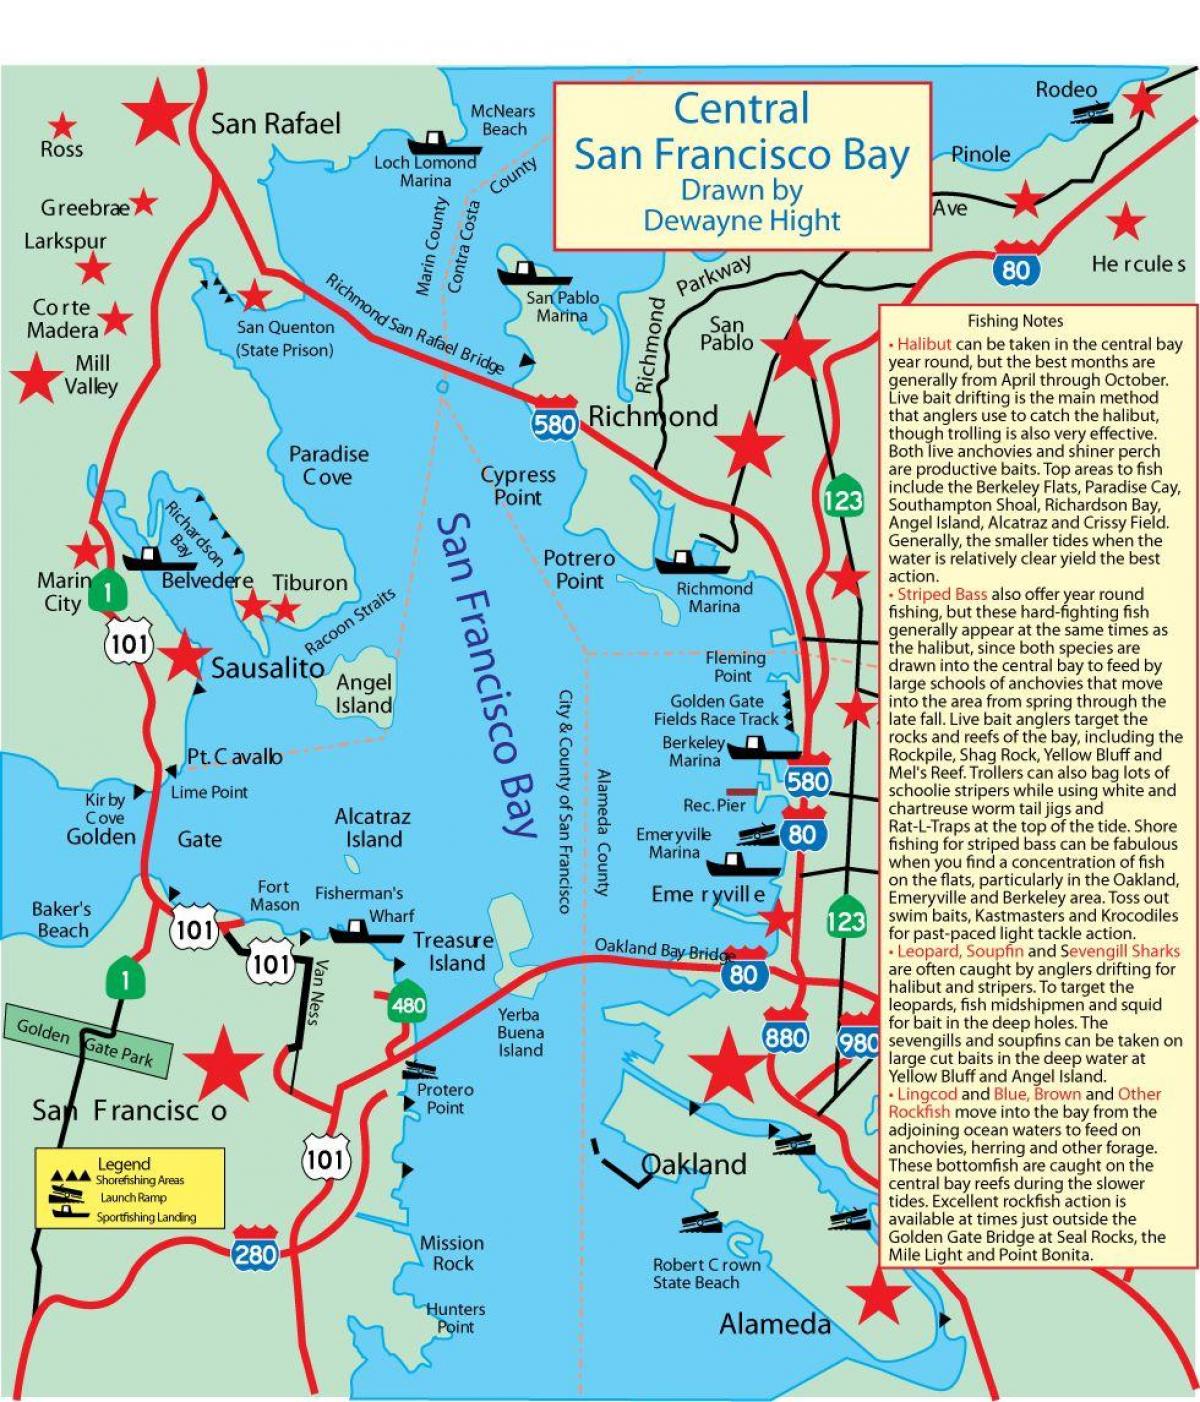 San Francisco Körfezi haritası balıkçılık 